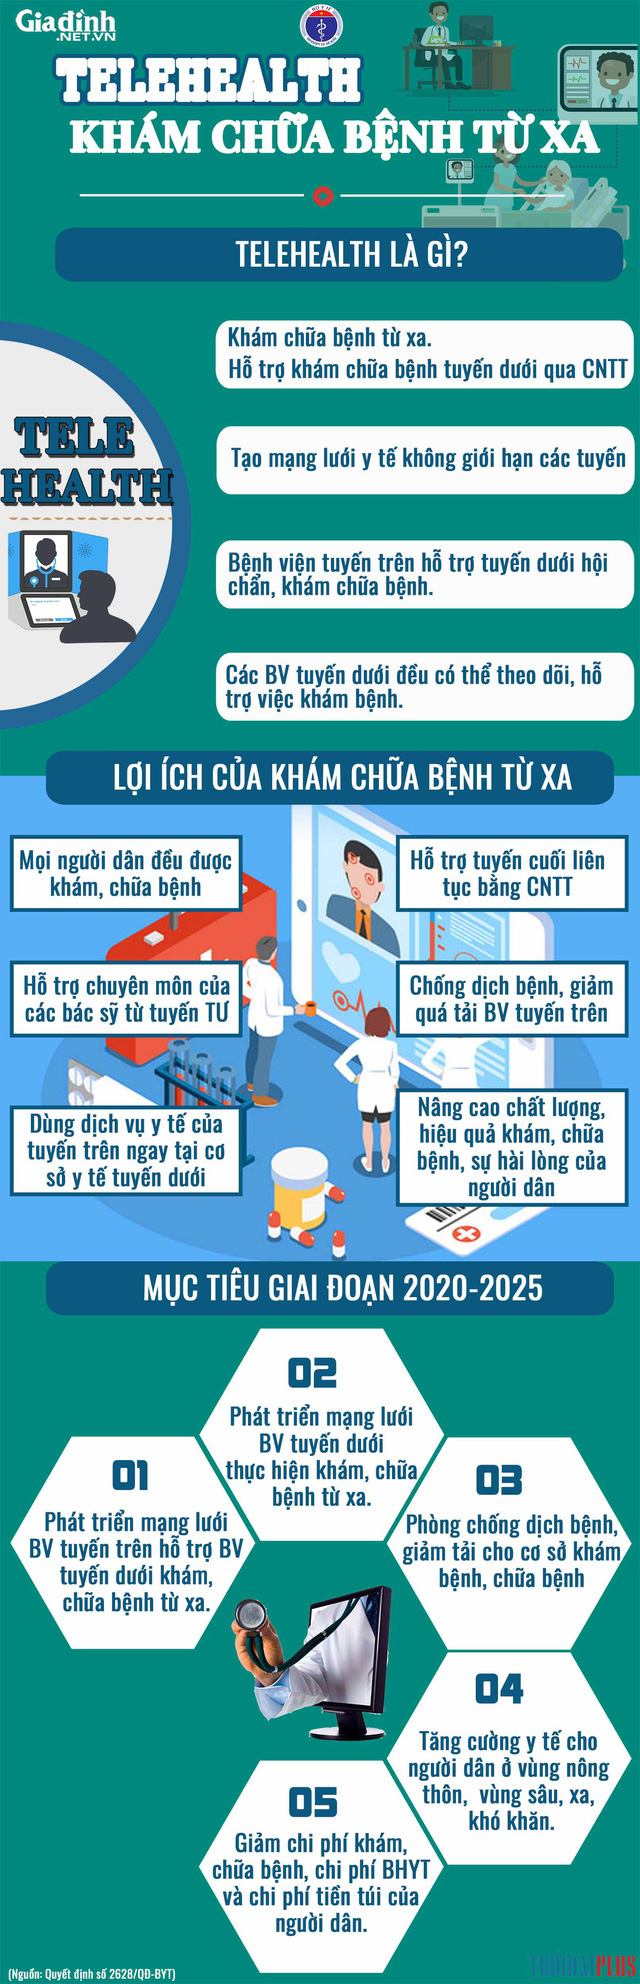 Đại hội lần thứ XVII Đảng bộ TP Hà Nội nhiệm kỳ 2020-2025 diễn ra trong ba ngày 11, 12, 13/10 - Ảnh 6.